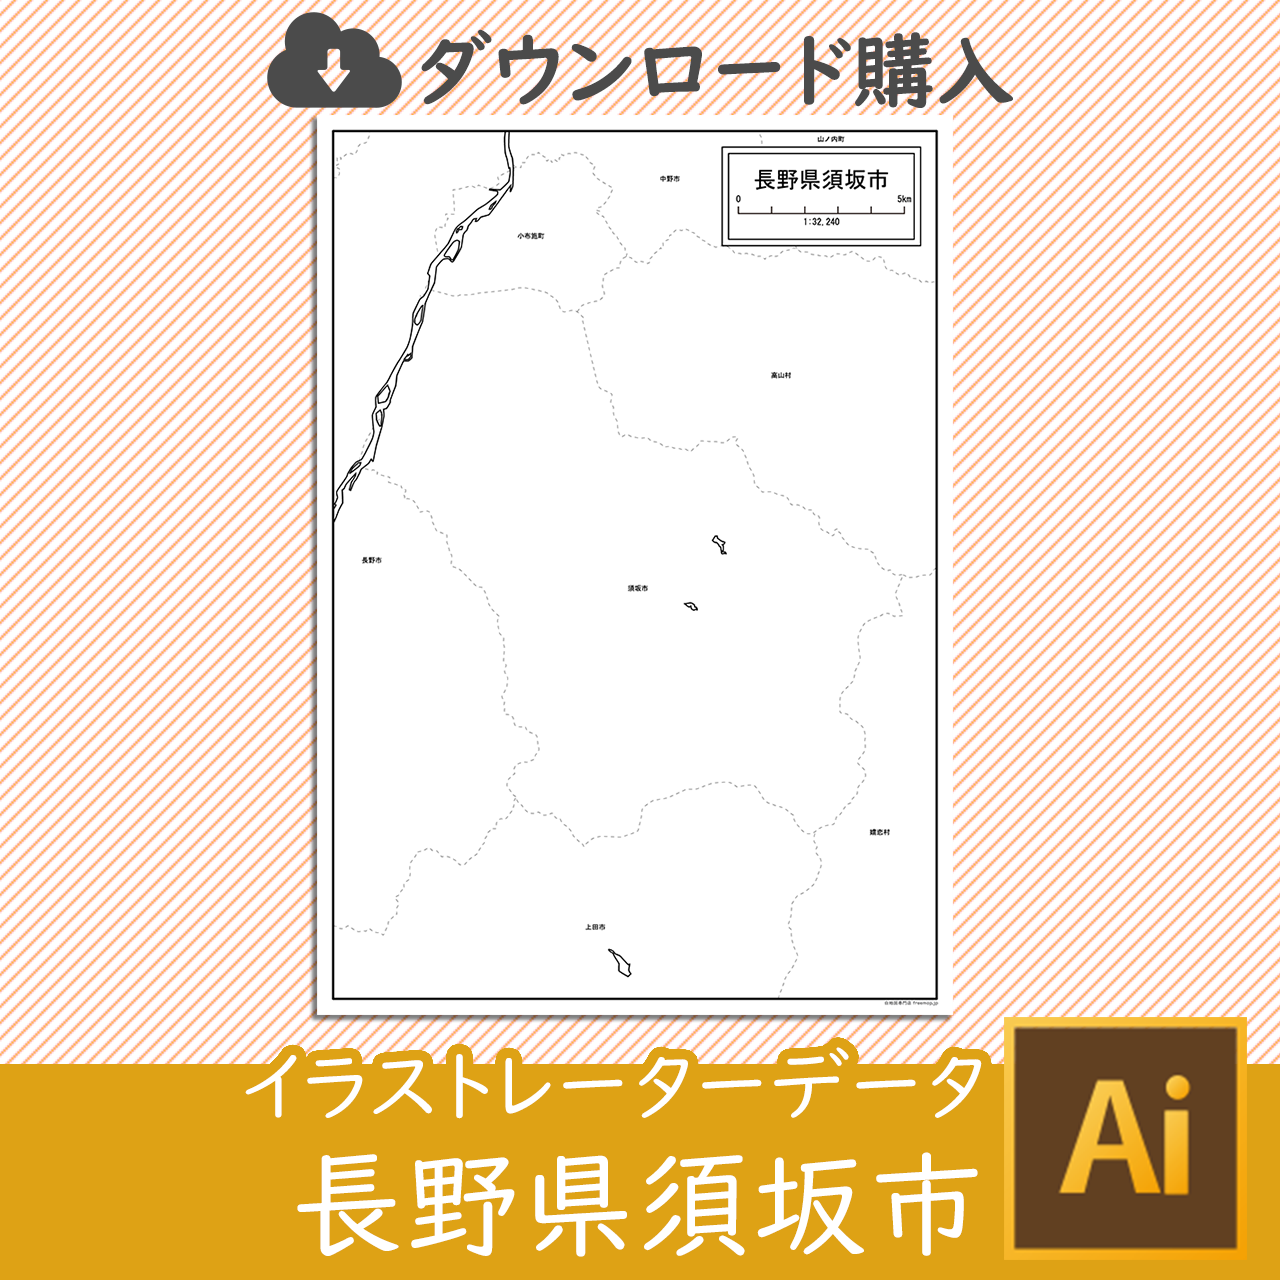 須坂市のaiデータのサムネイル画像